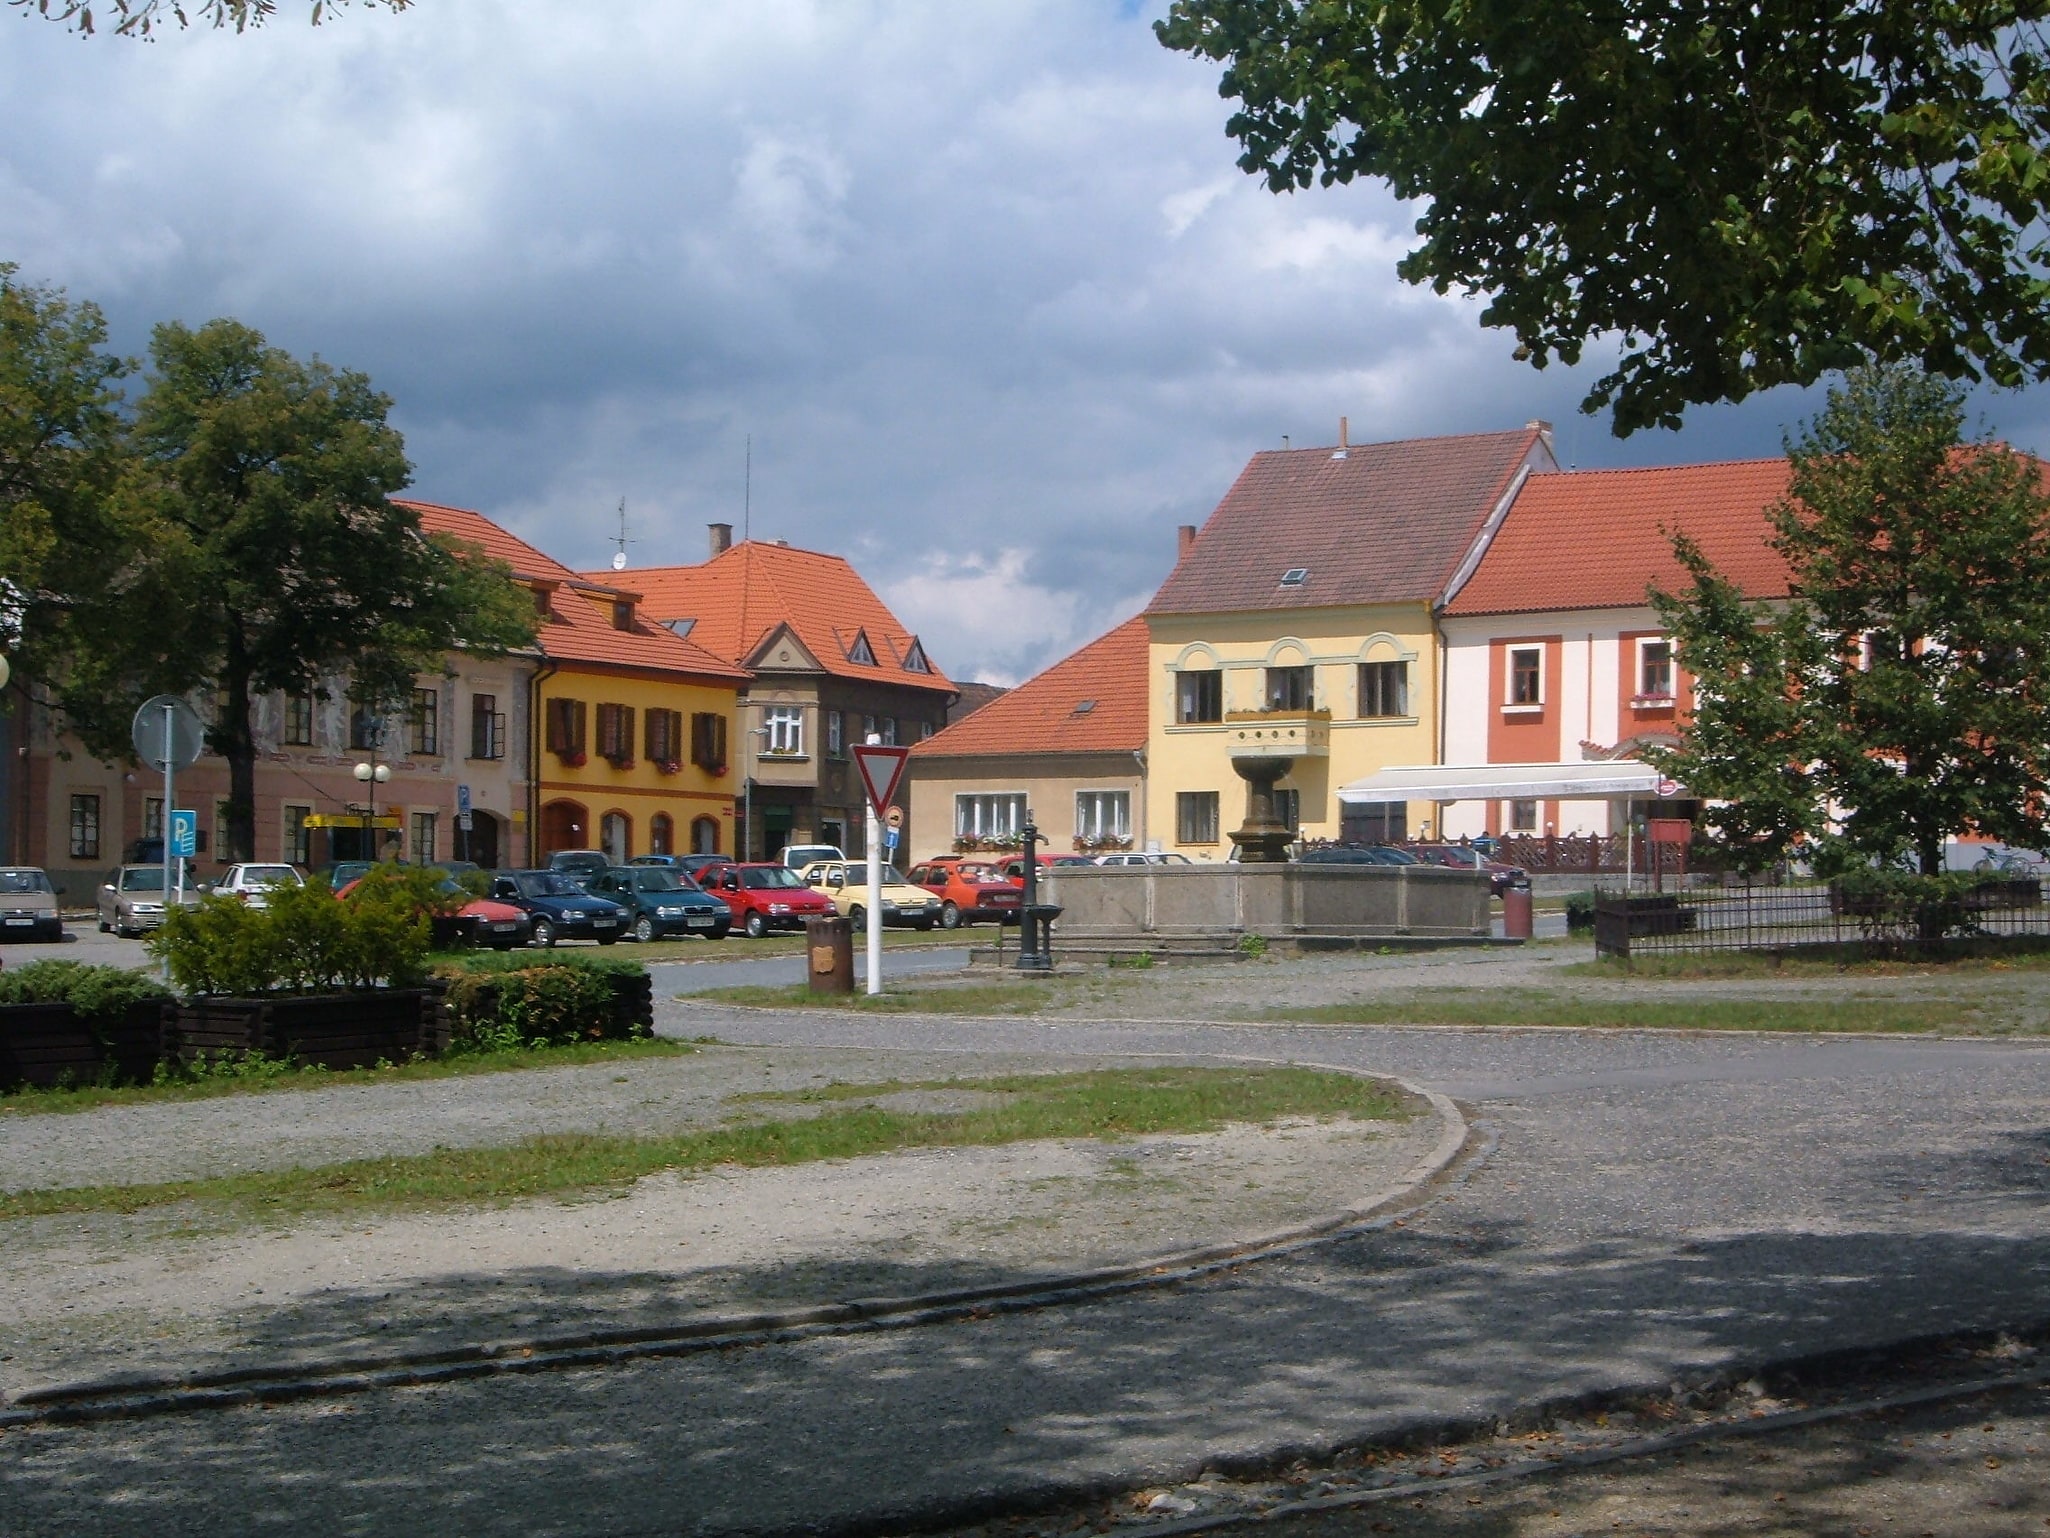 Bechyně, República Checa